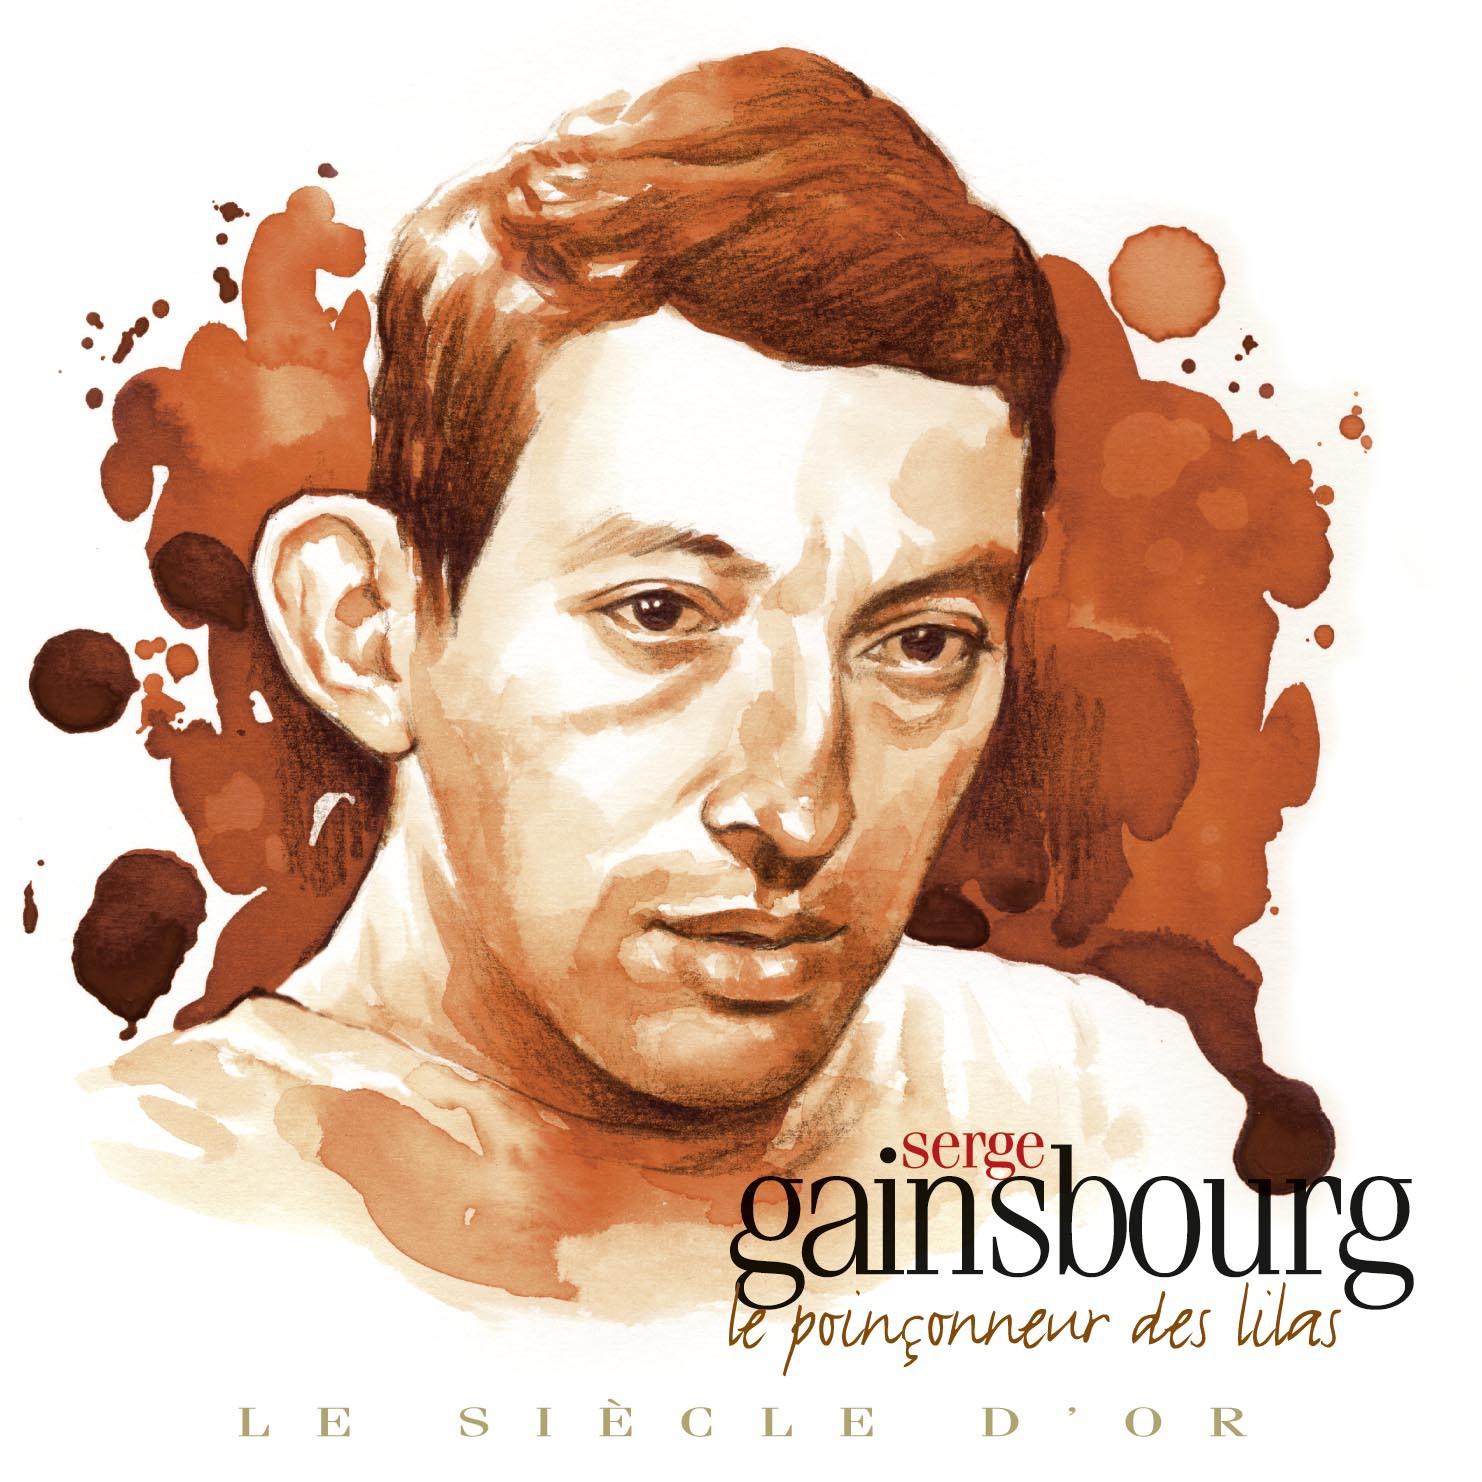 Serge Gainsbourg  Le sie cle d' or: Le Poin onneur des Lilas